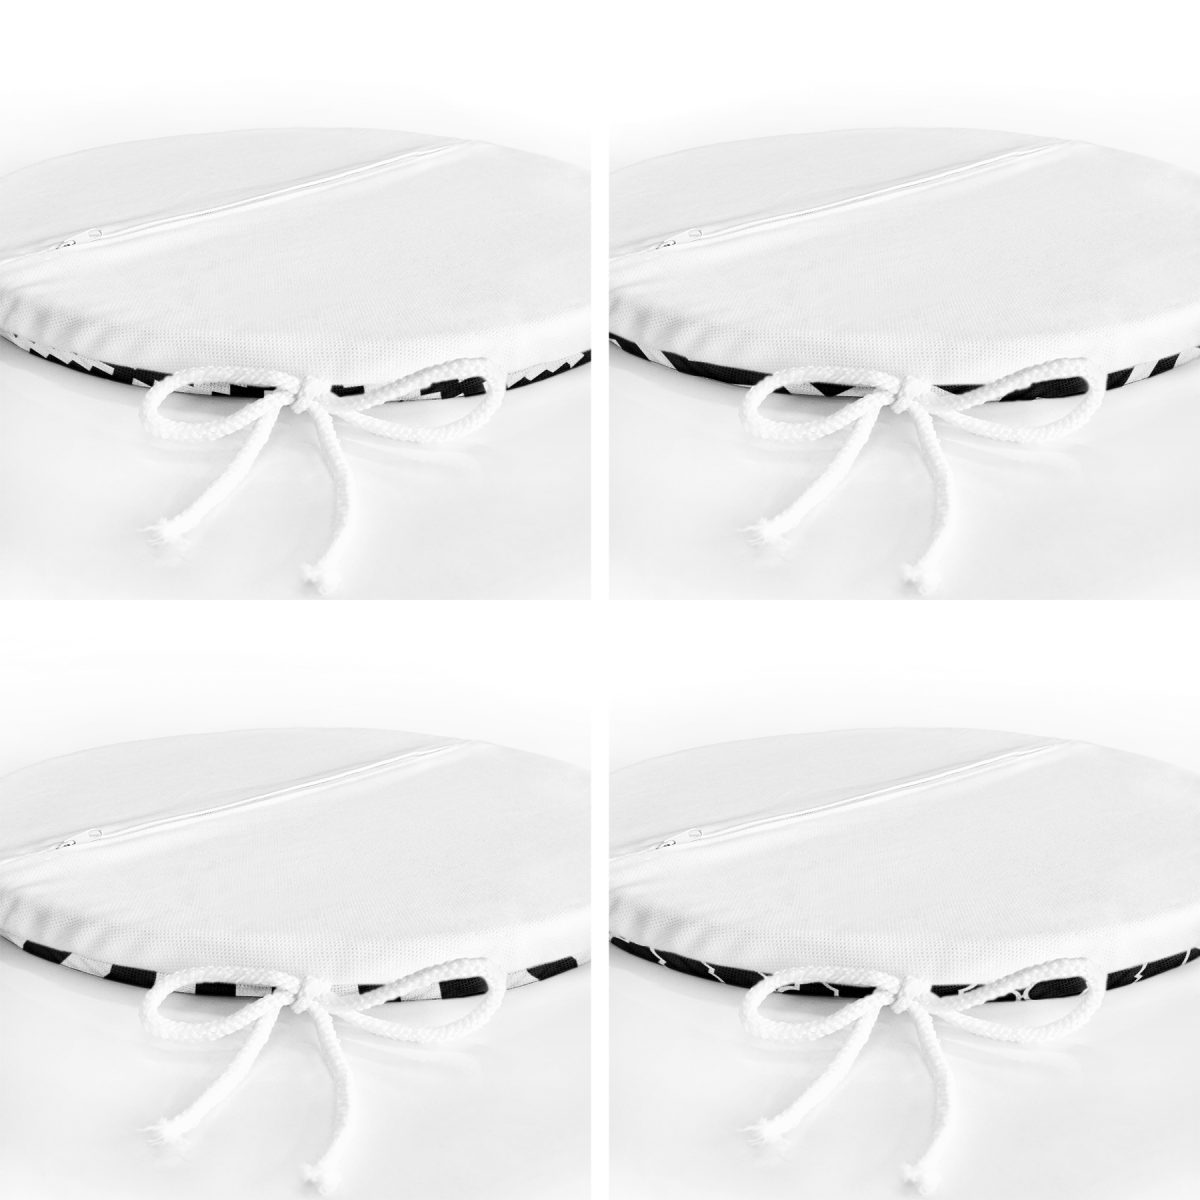 4'lü Siyah Beyaz Geometrik Şekiller Yuvarlak Fermuarlı Sandalye Minderi Seti Realhomes